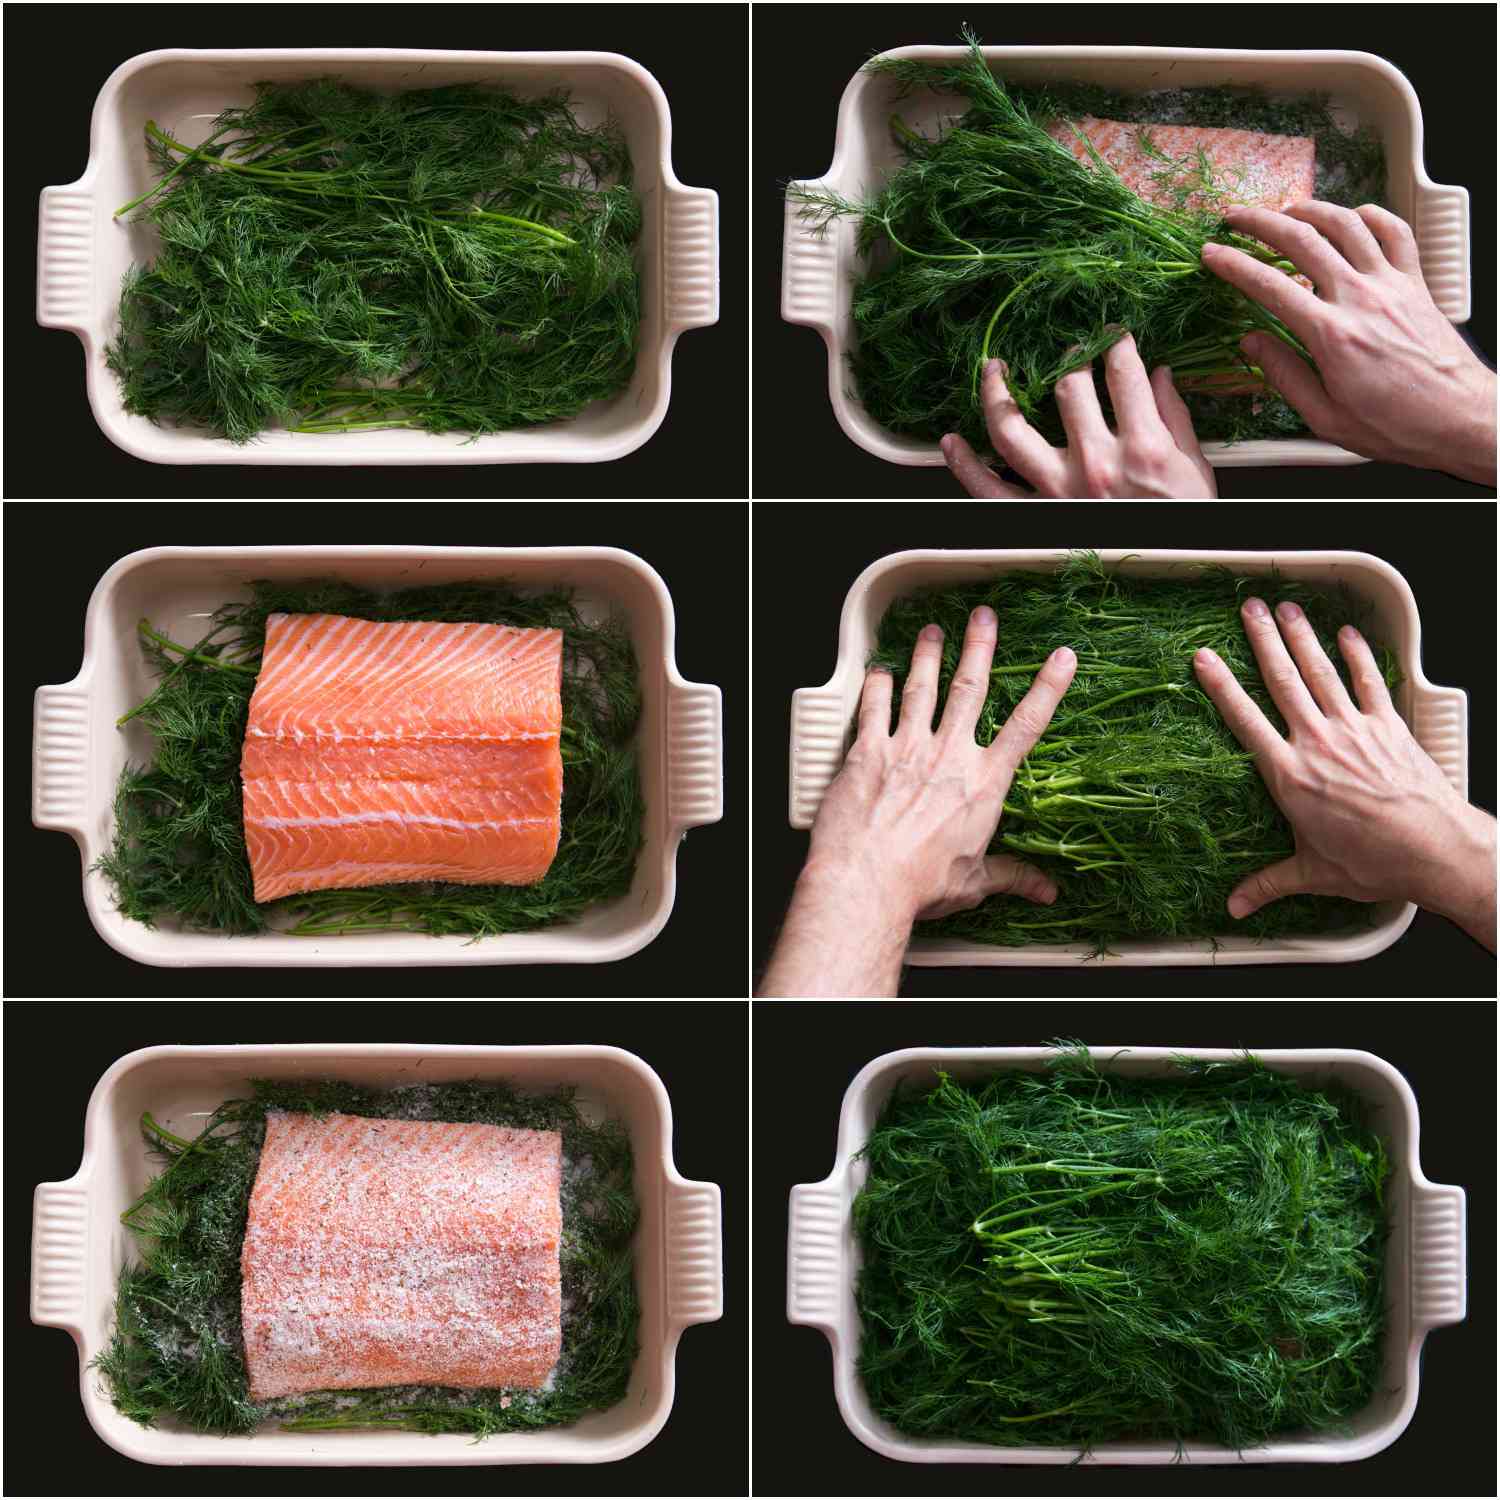 拼贴拼贴:将莳萝、三文鱼、腌制混合物分层，覆盖一层厚厚的莳萝。gydF4y2Ba